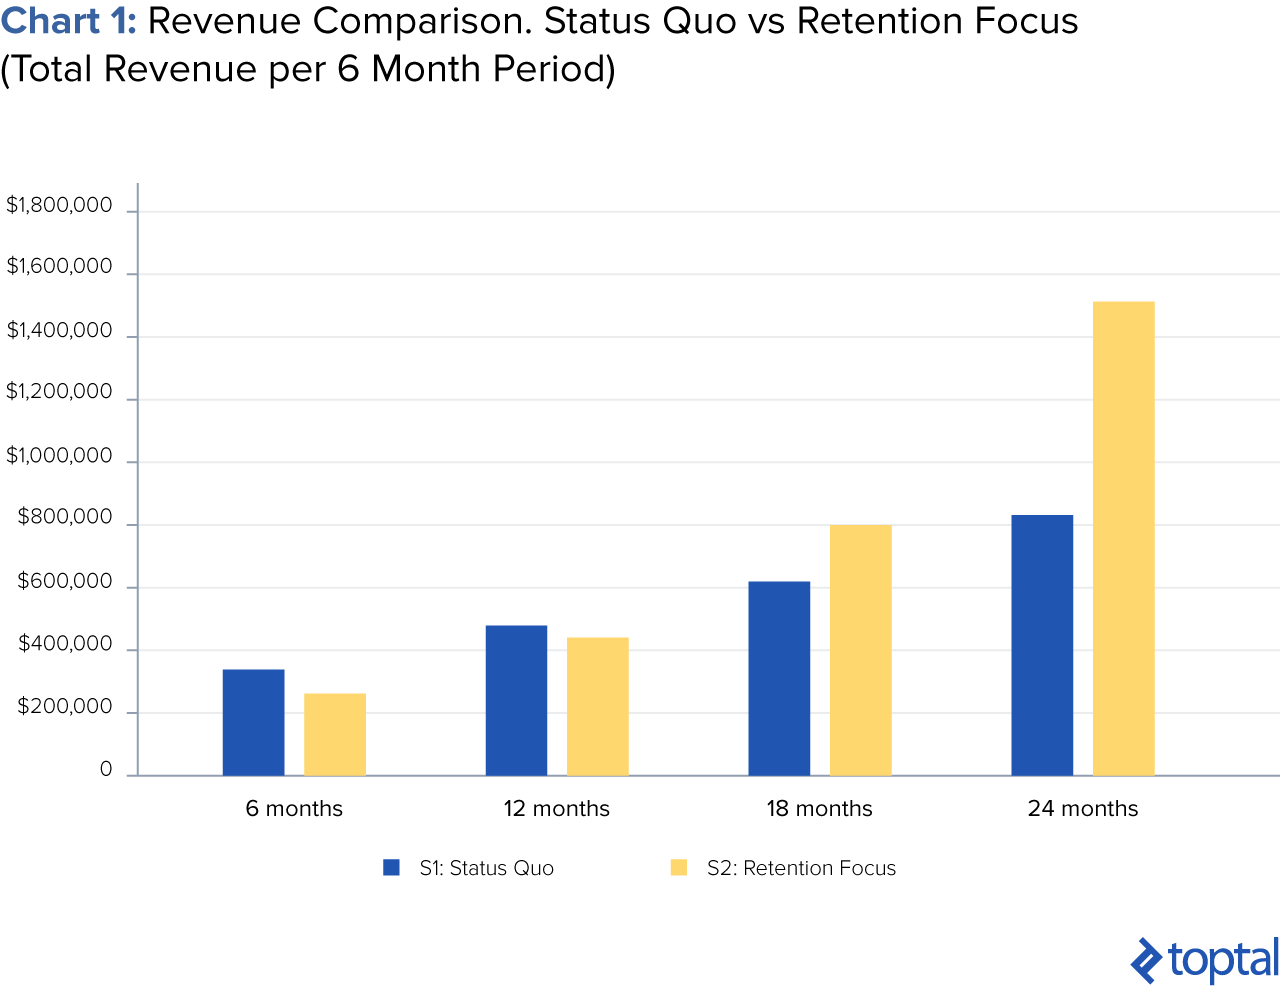 Revenue comparison: Status Quo vs. Retention Focus